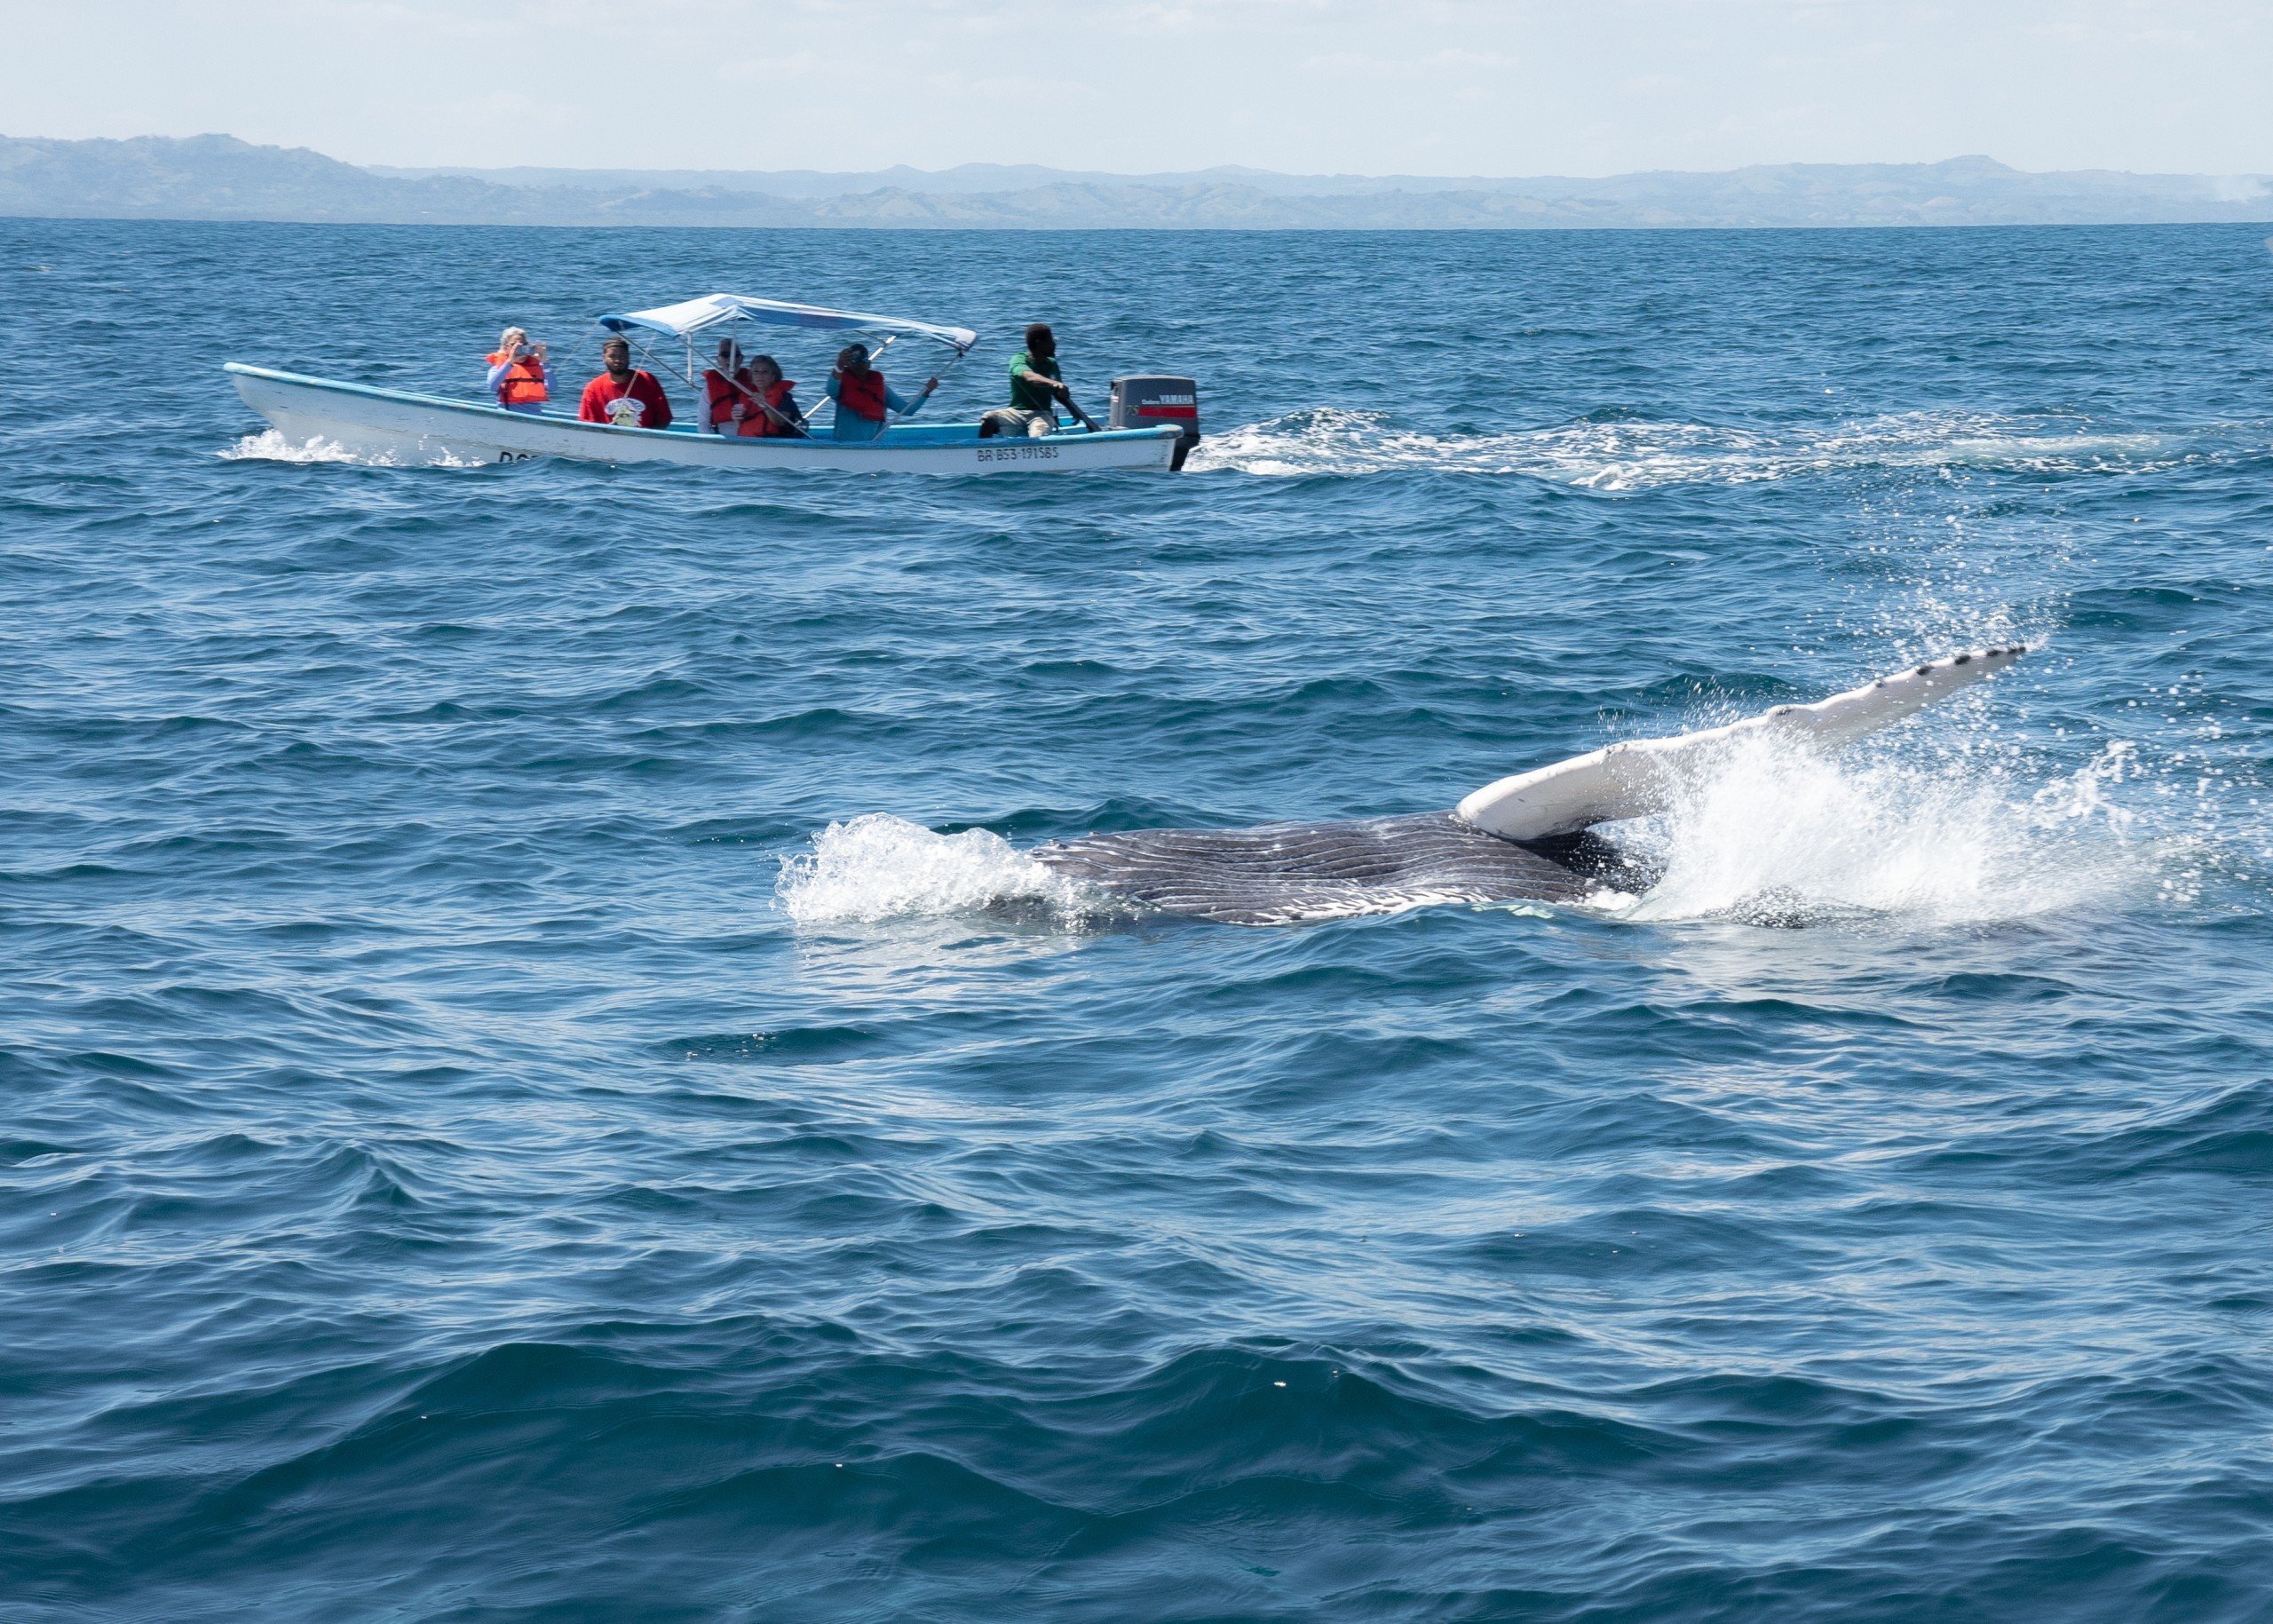 Humpback whale 